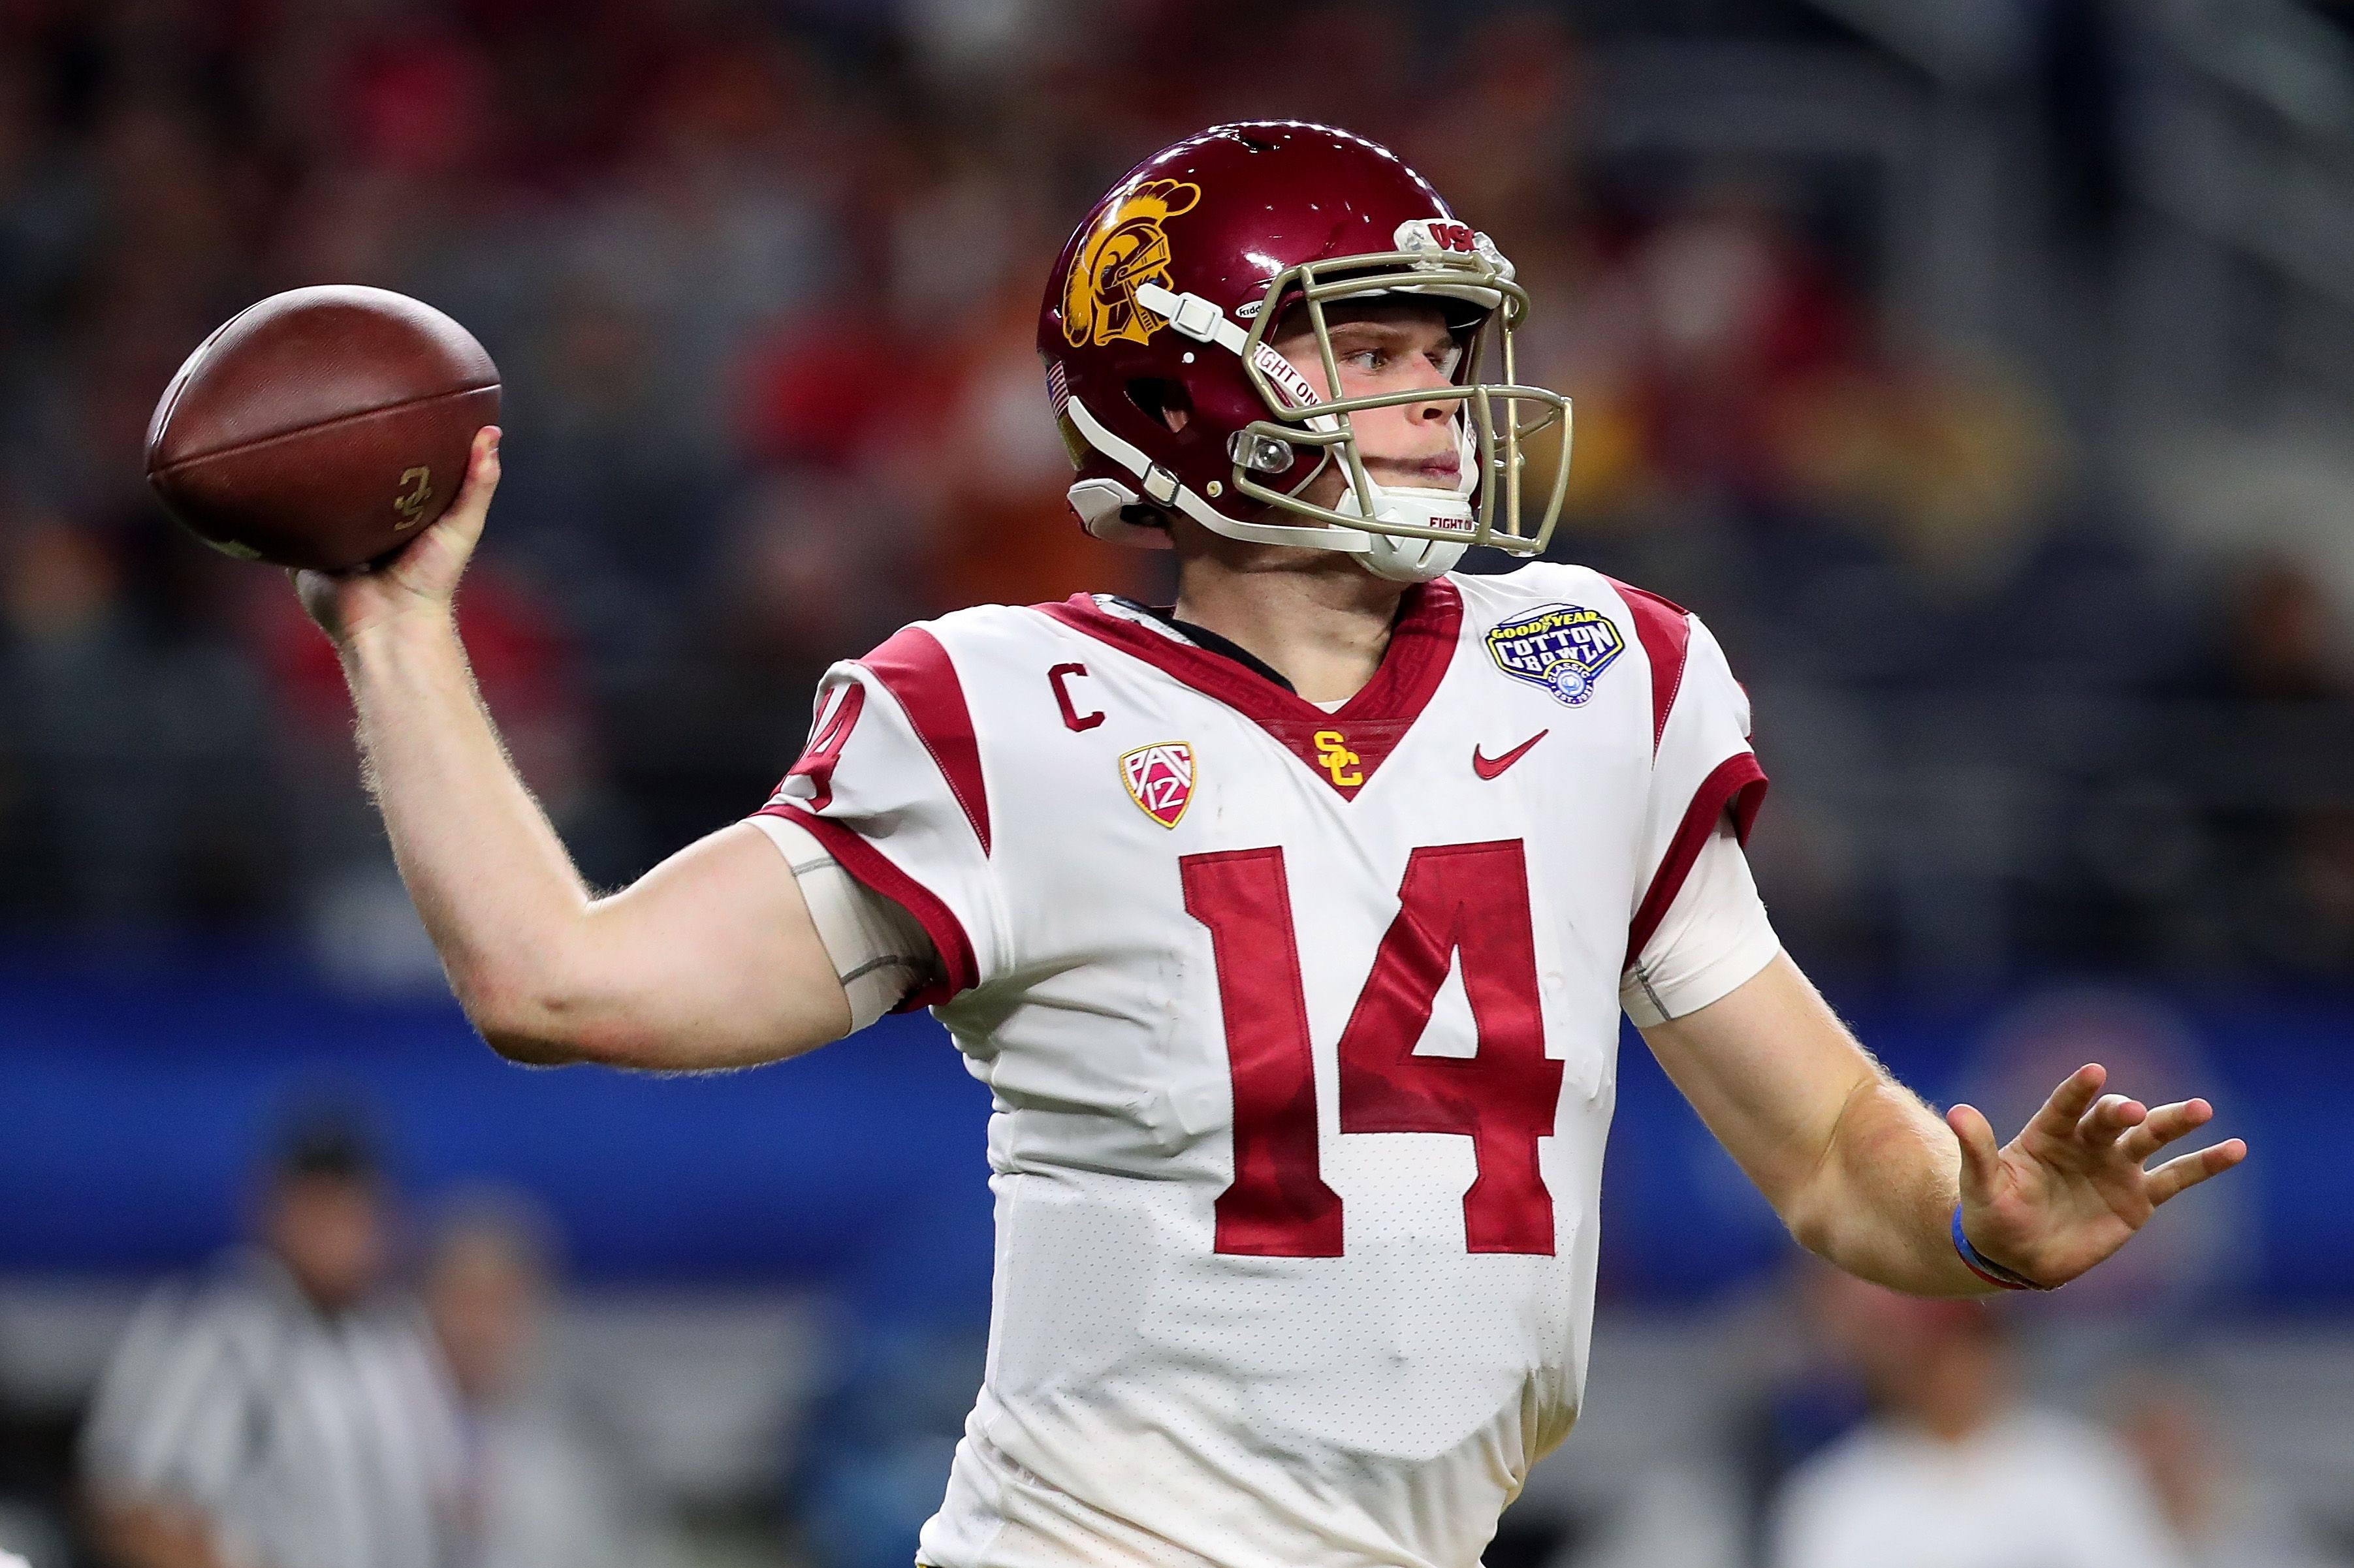 Two USC football stars in Mel Kiper’s first 2018 NFL mock draft